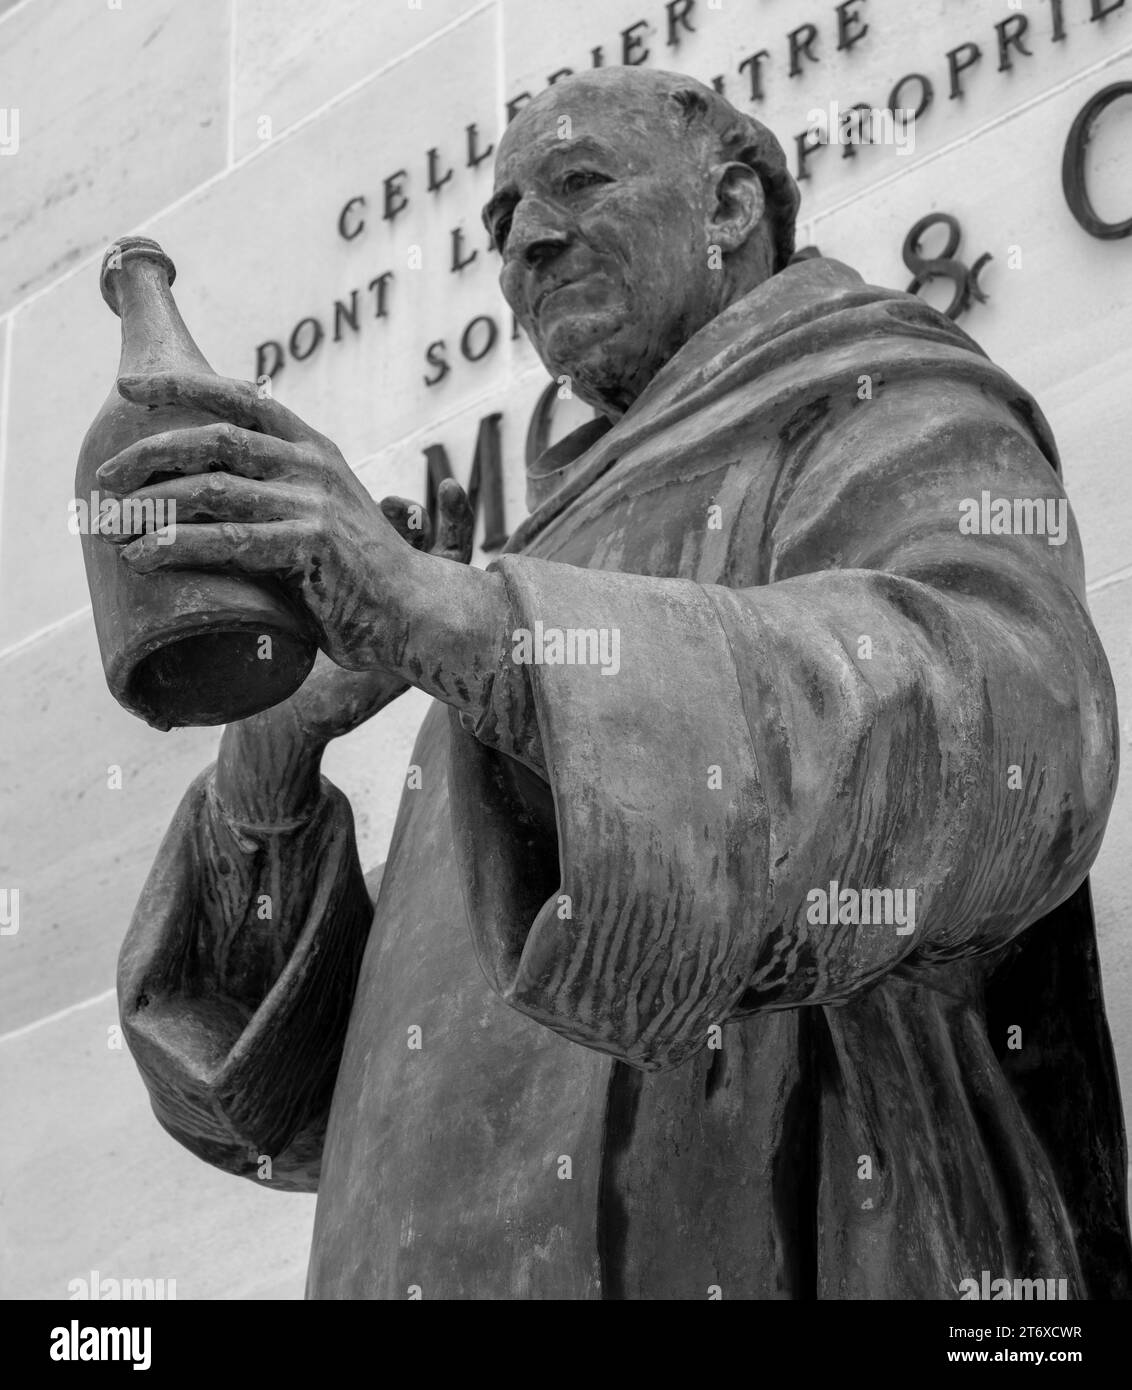 Statua di Don Pierre Perignon di fronte al quartier generale di Moet et Chandon, Epernay, regione Champagne, Francia. Foto Stock